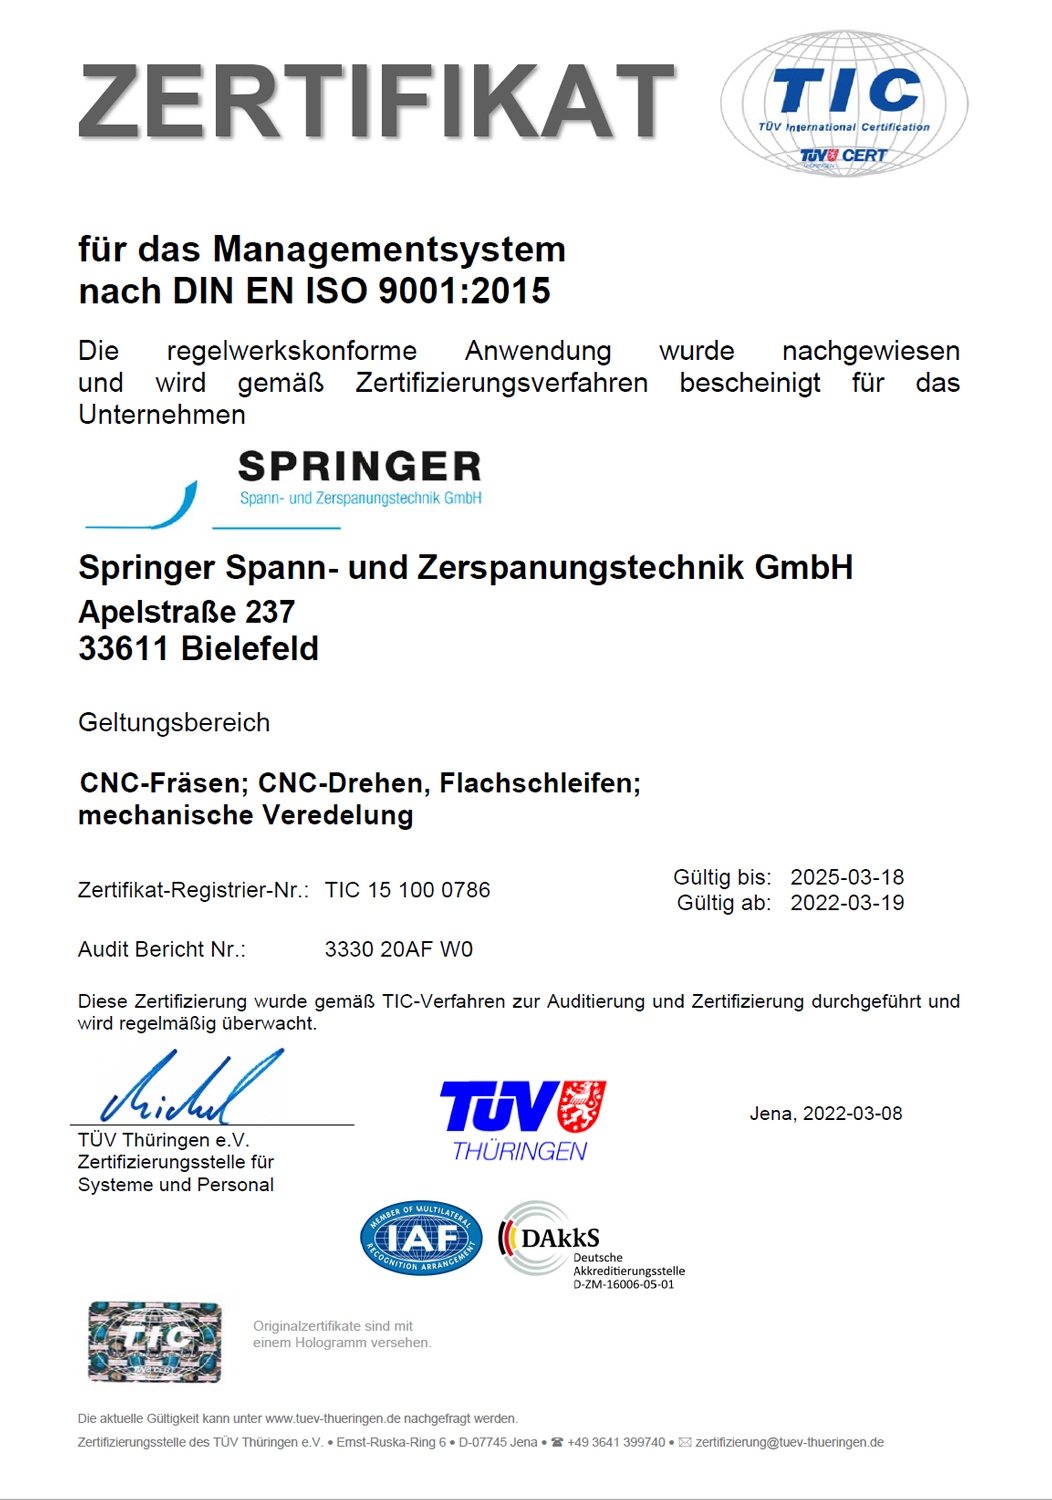 Zertifikat für das Managementsystem nach DIN EN ISO 9001:2015